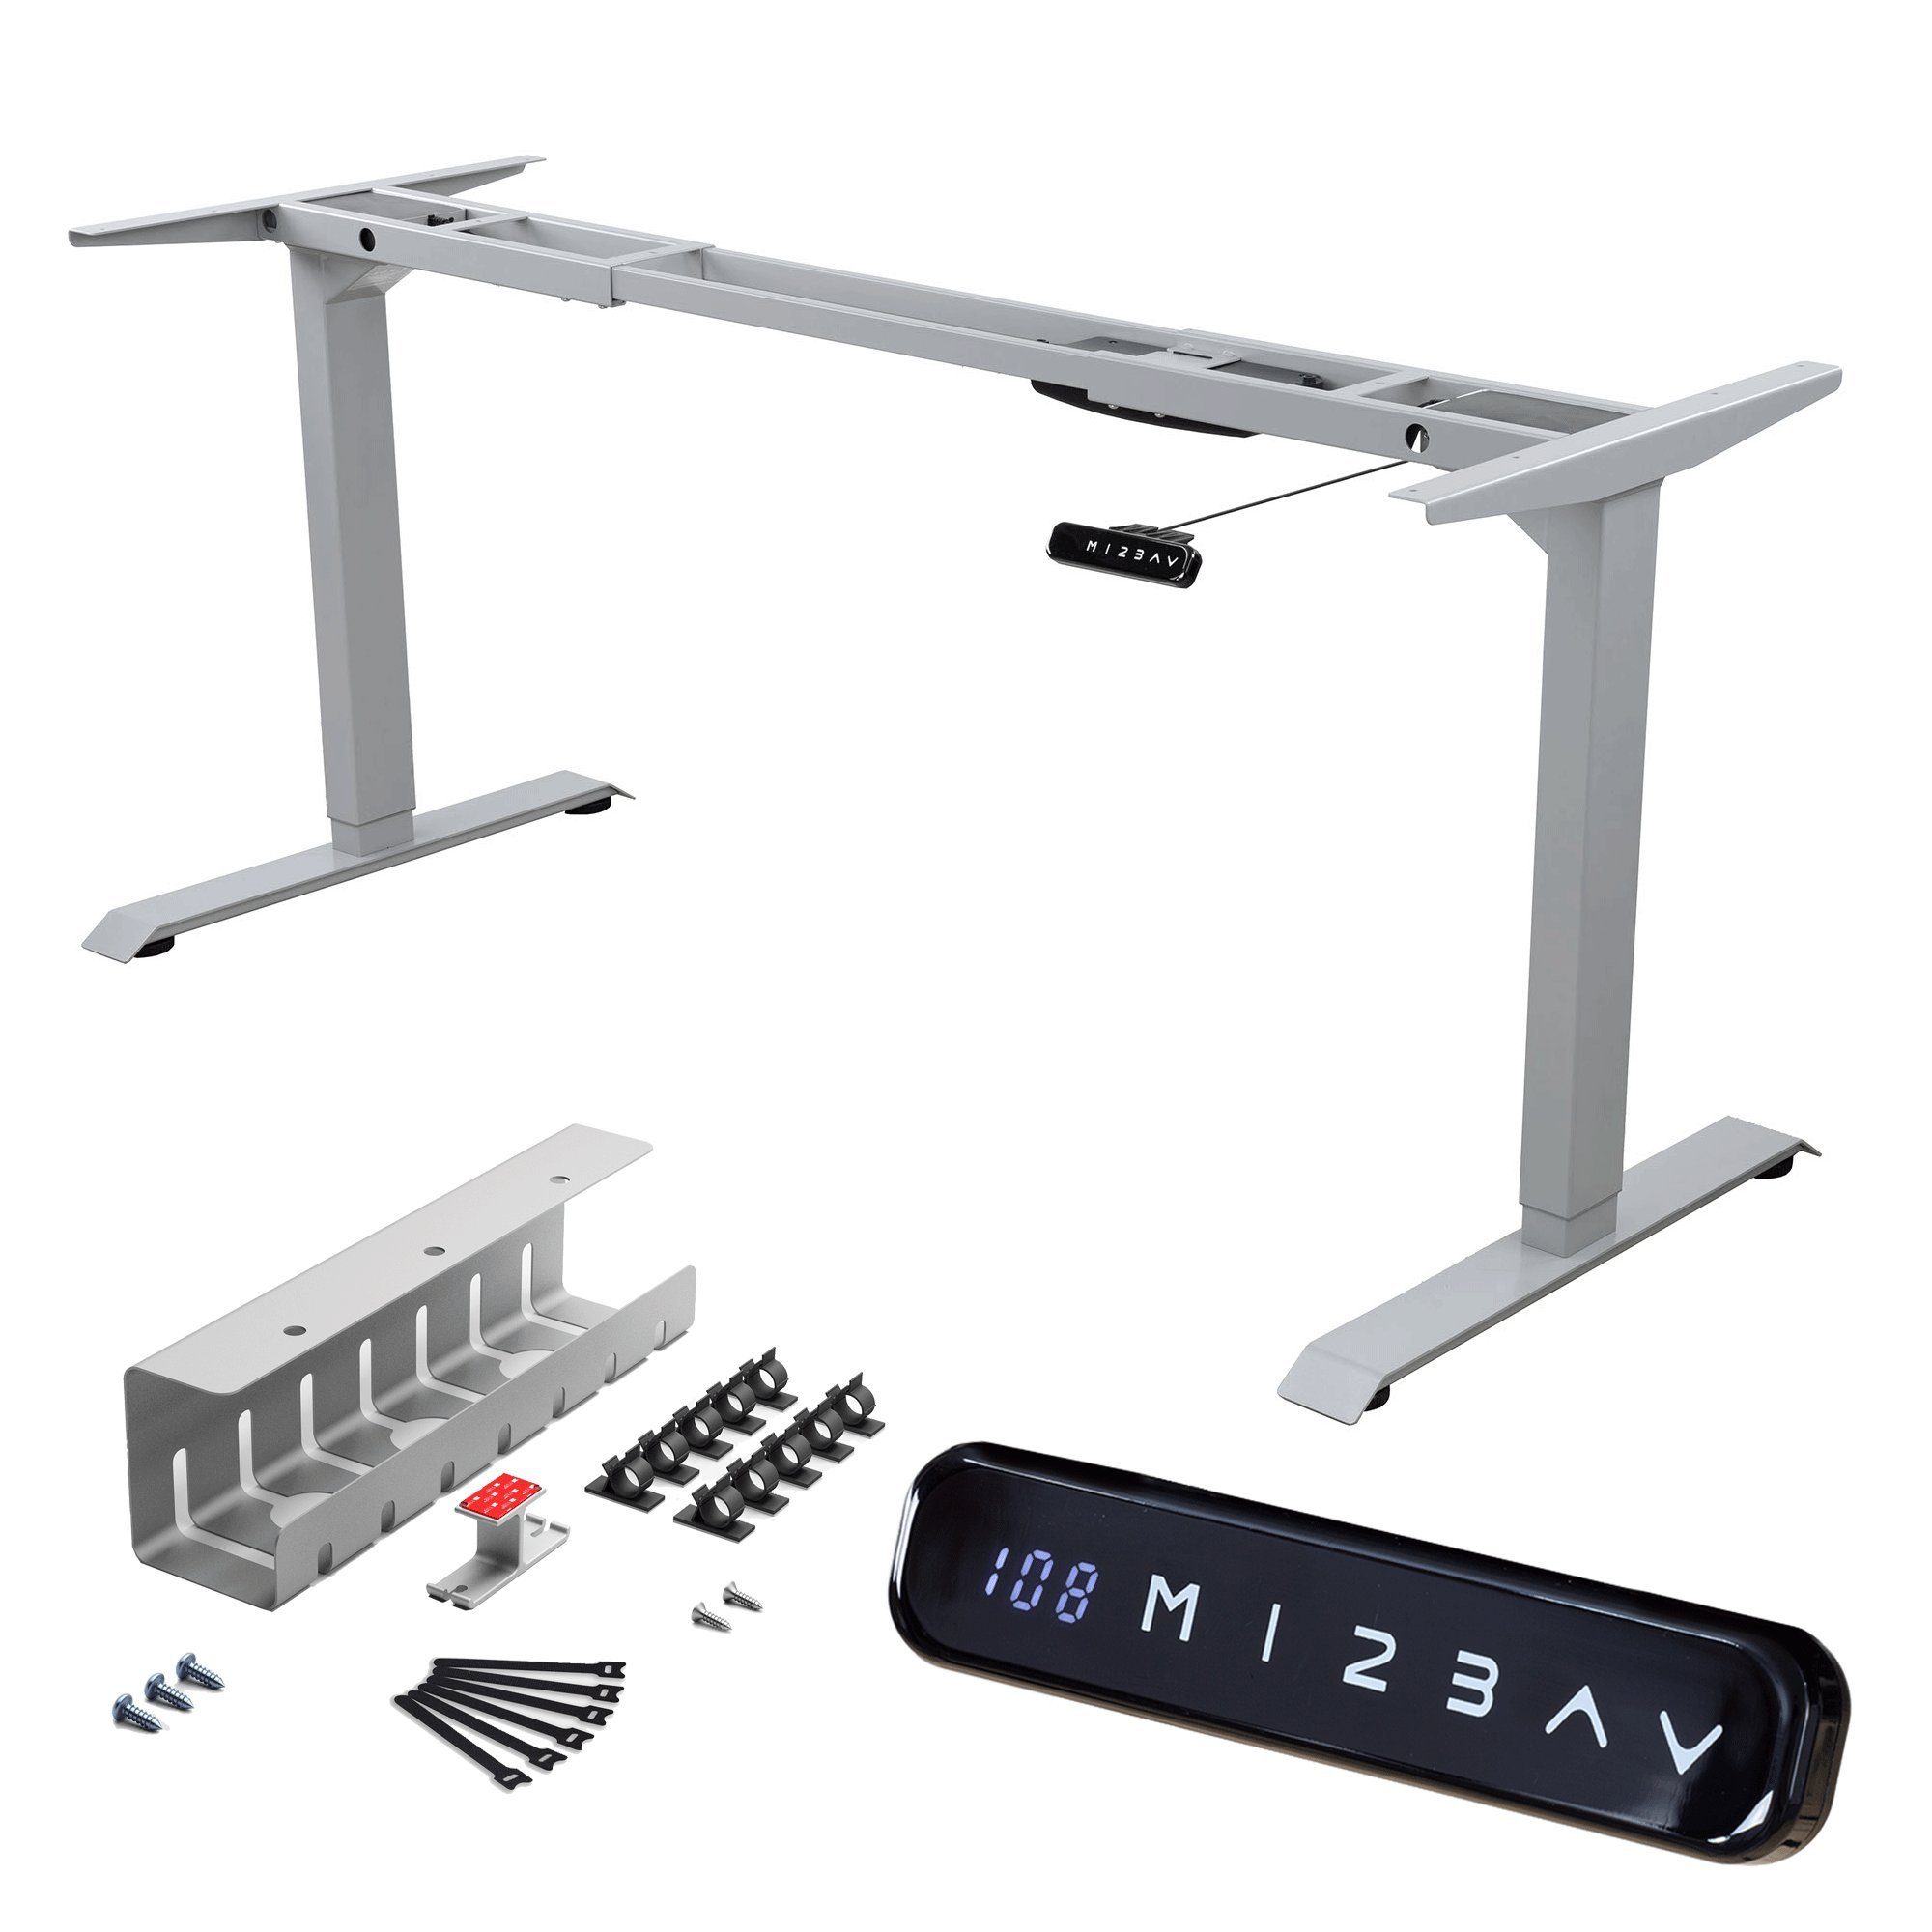 Albatros International Schreibtisch Albatros elektrisch höhenverstellbares Tischgestell mit Kabelkanal S5S (Silber mit Kabelkanal), mit Memory-Funktion, Kollisionsschutz, Soft-Start/Stop